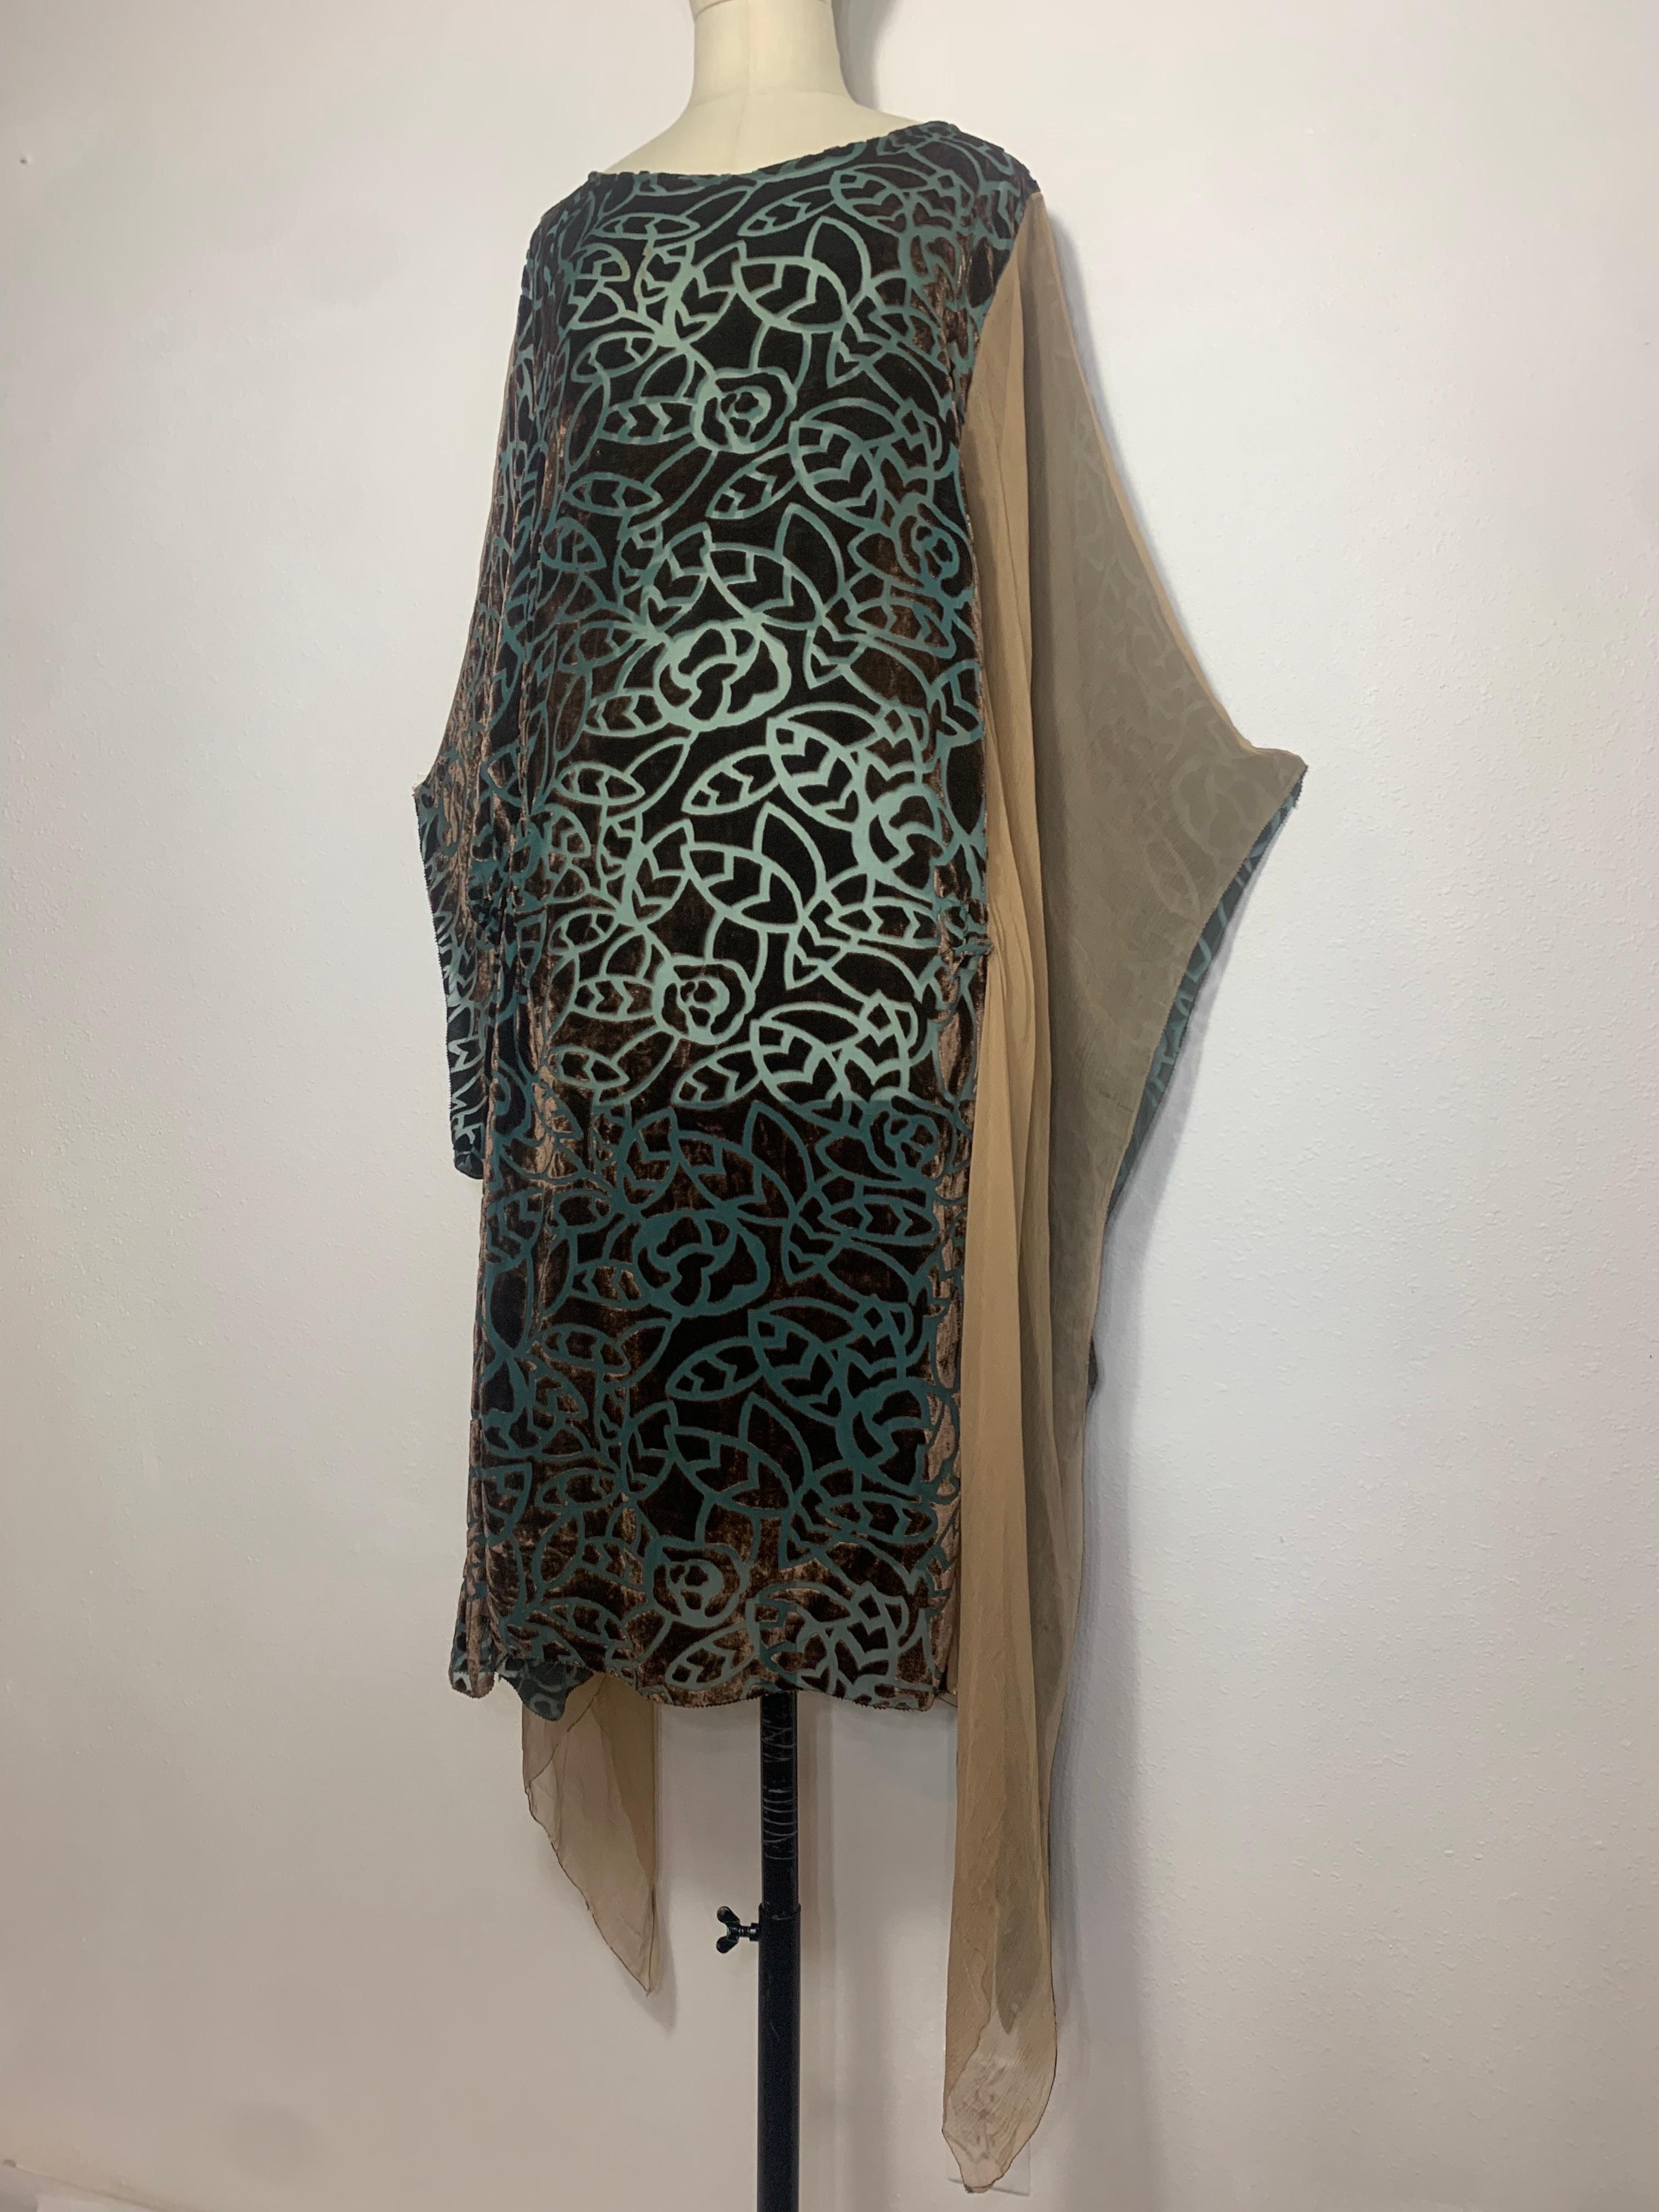 1920er Art Deco Patina Grün & Taupe Devore Samt Tunika Kleid w stilisierte Blatt-Muster:  Die ungewöhnliche Konstruktion ist auf der einen Seite geschlossen und auf der anderen Seite offen und tabellenartig.  Kimono-Ärmel. Diaphan und fließend in